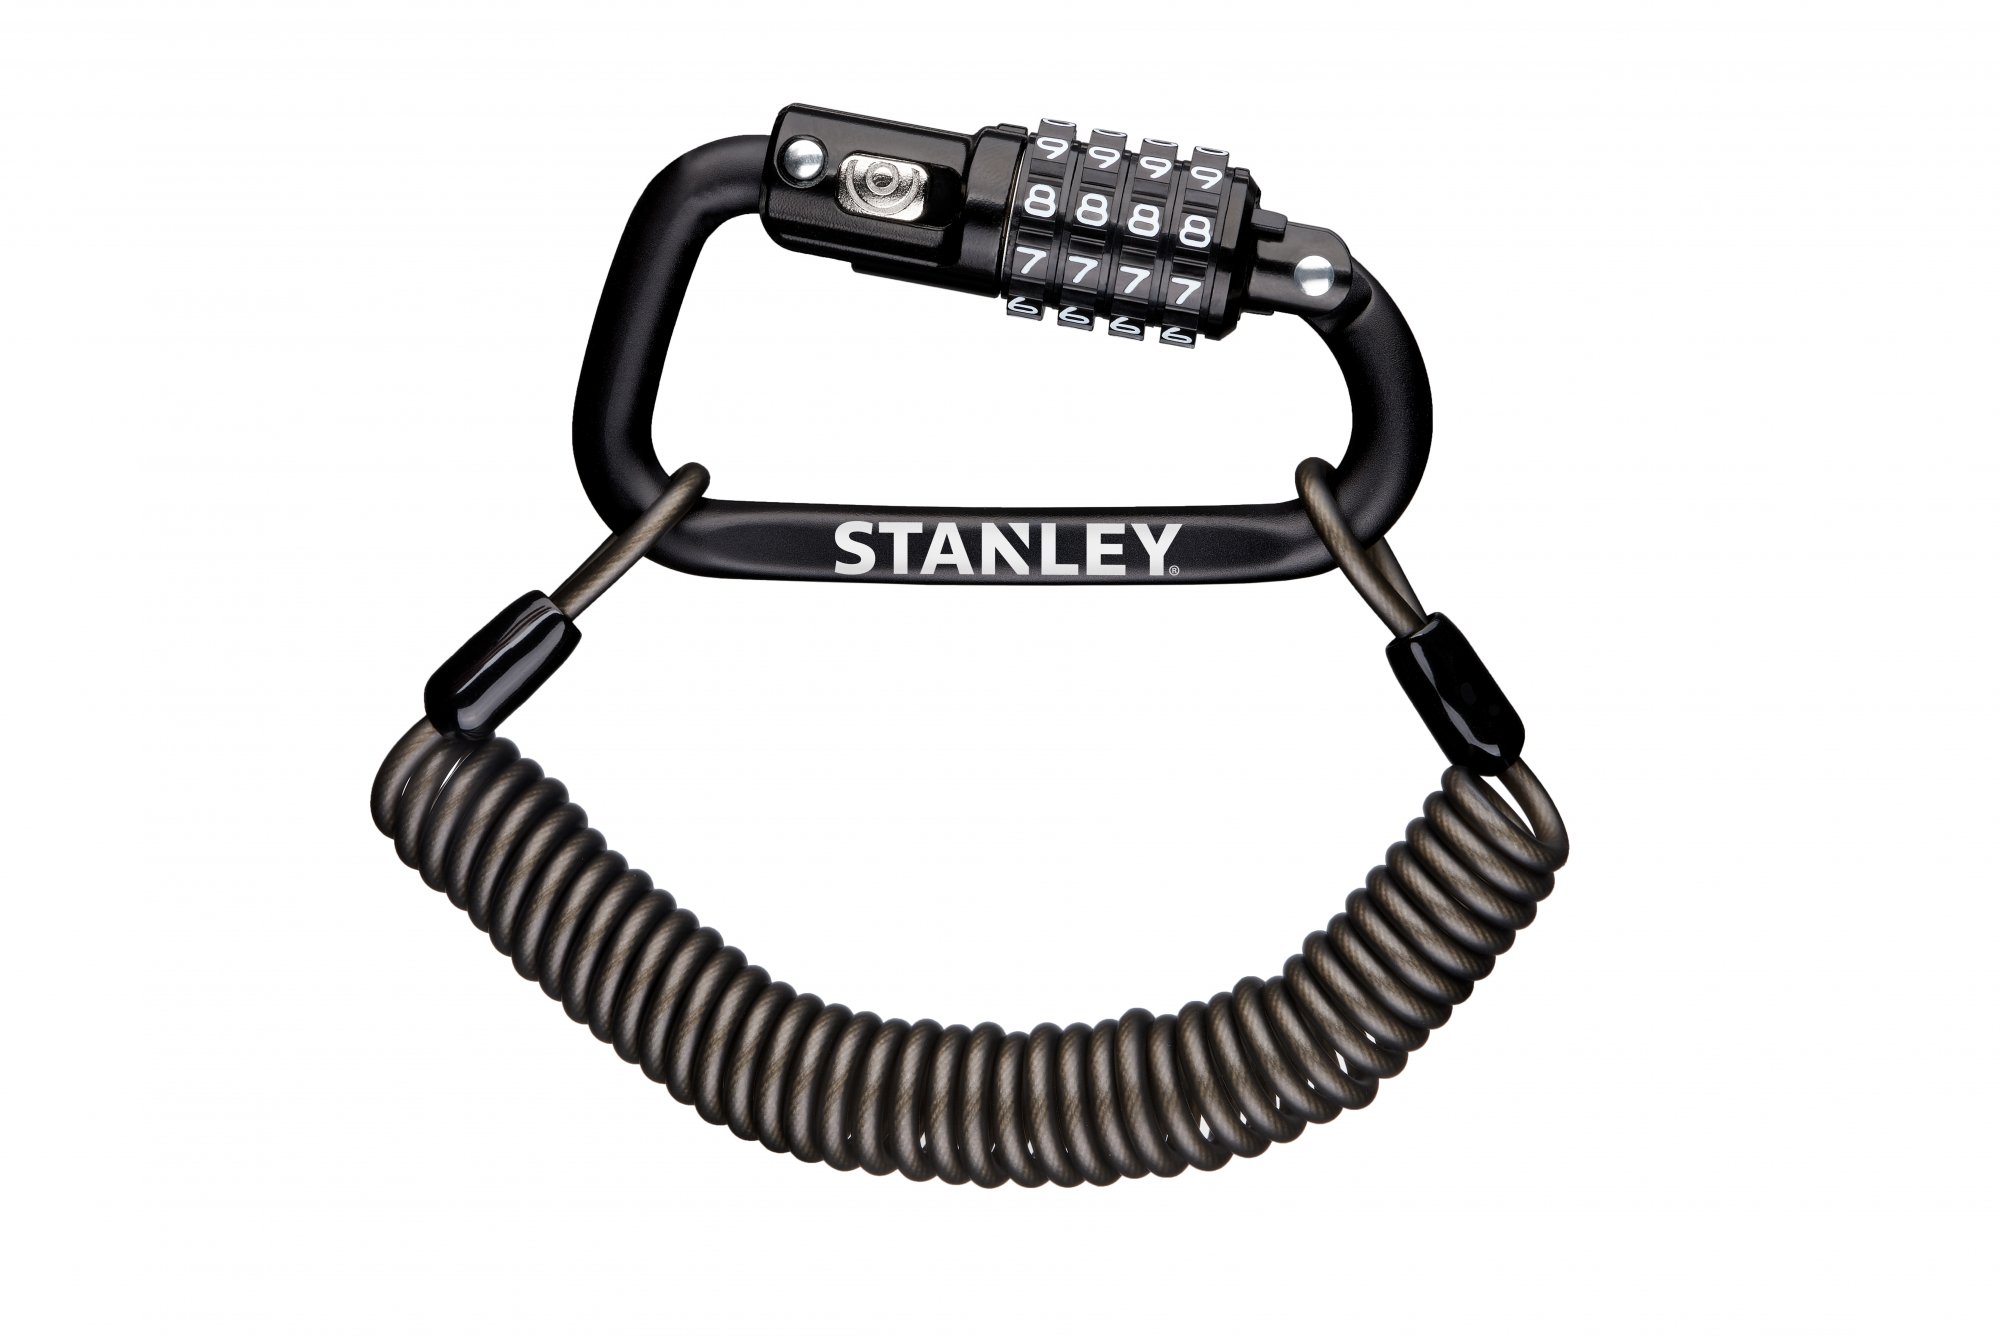 Stanley S744-030 4-cijferig Kabelslot - 1800mm